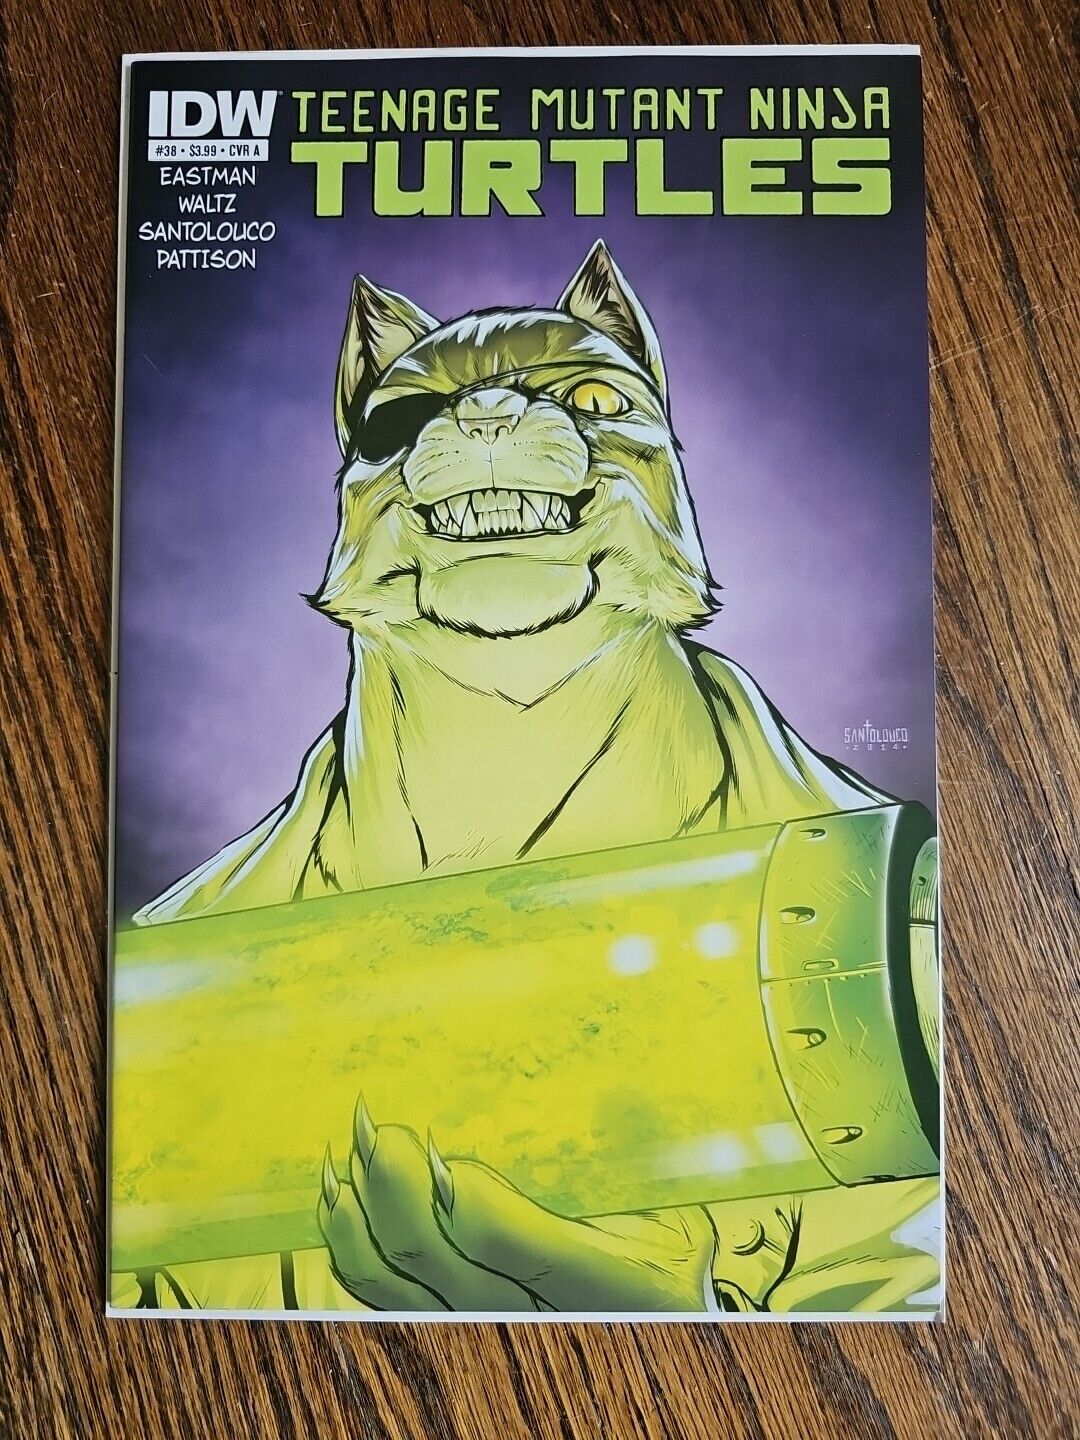 Teenage Mutant Ninja Turtles #38 TMNT - IDW - Cover A